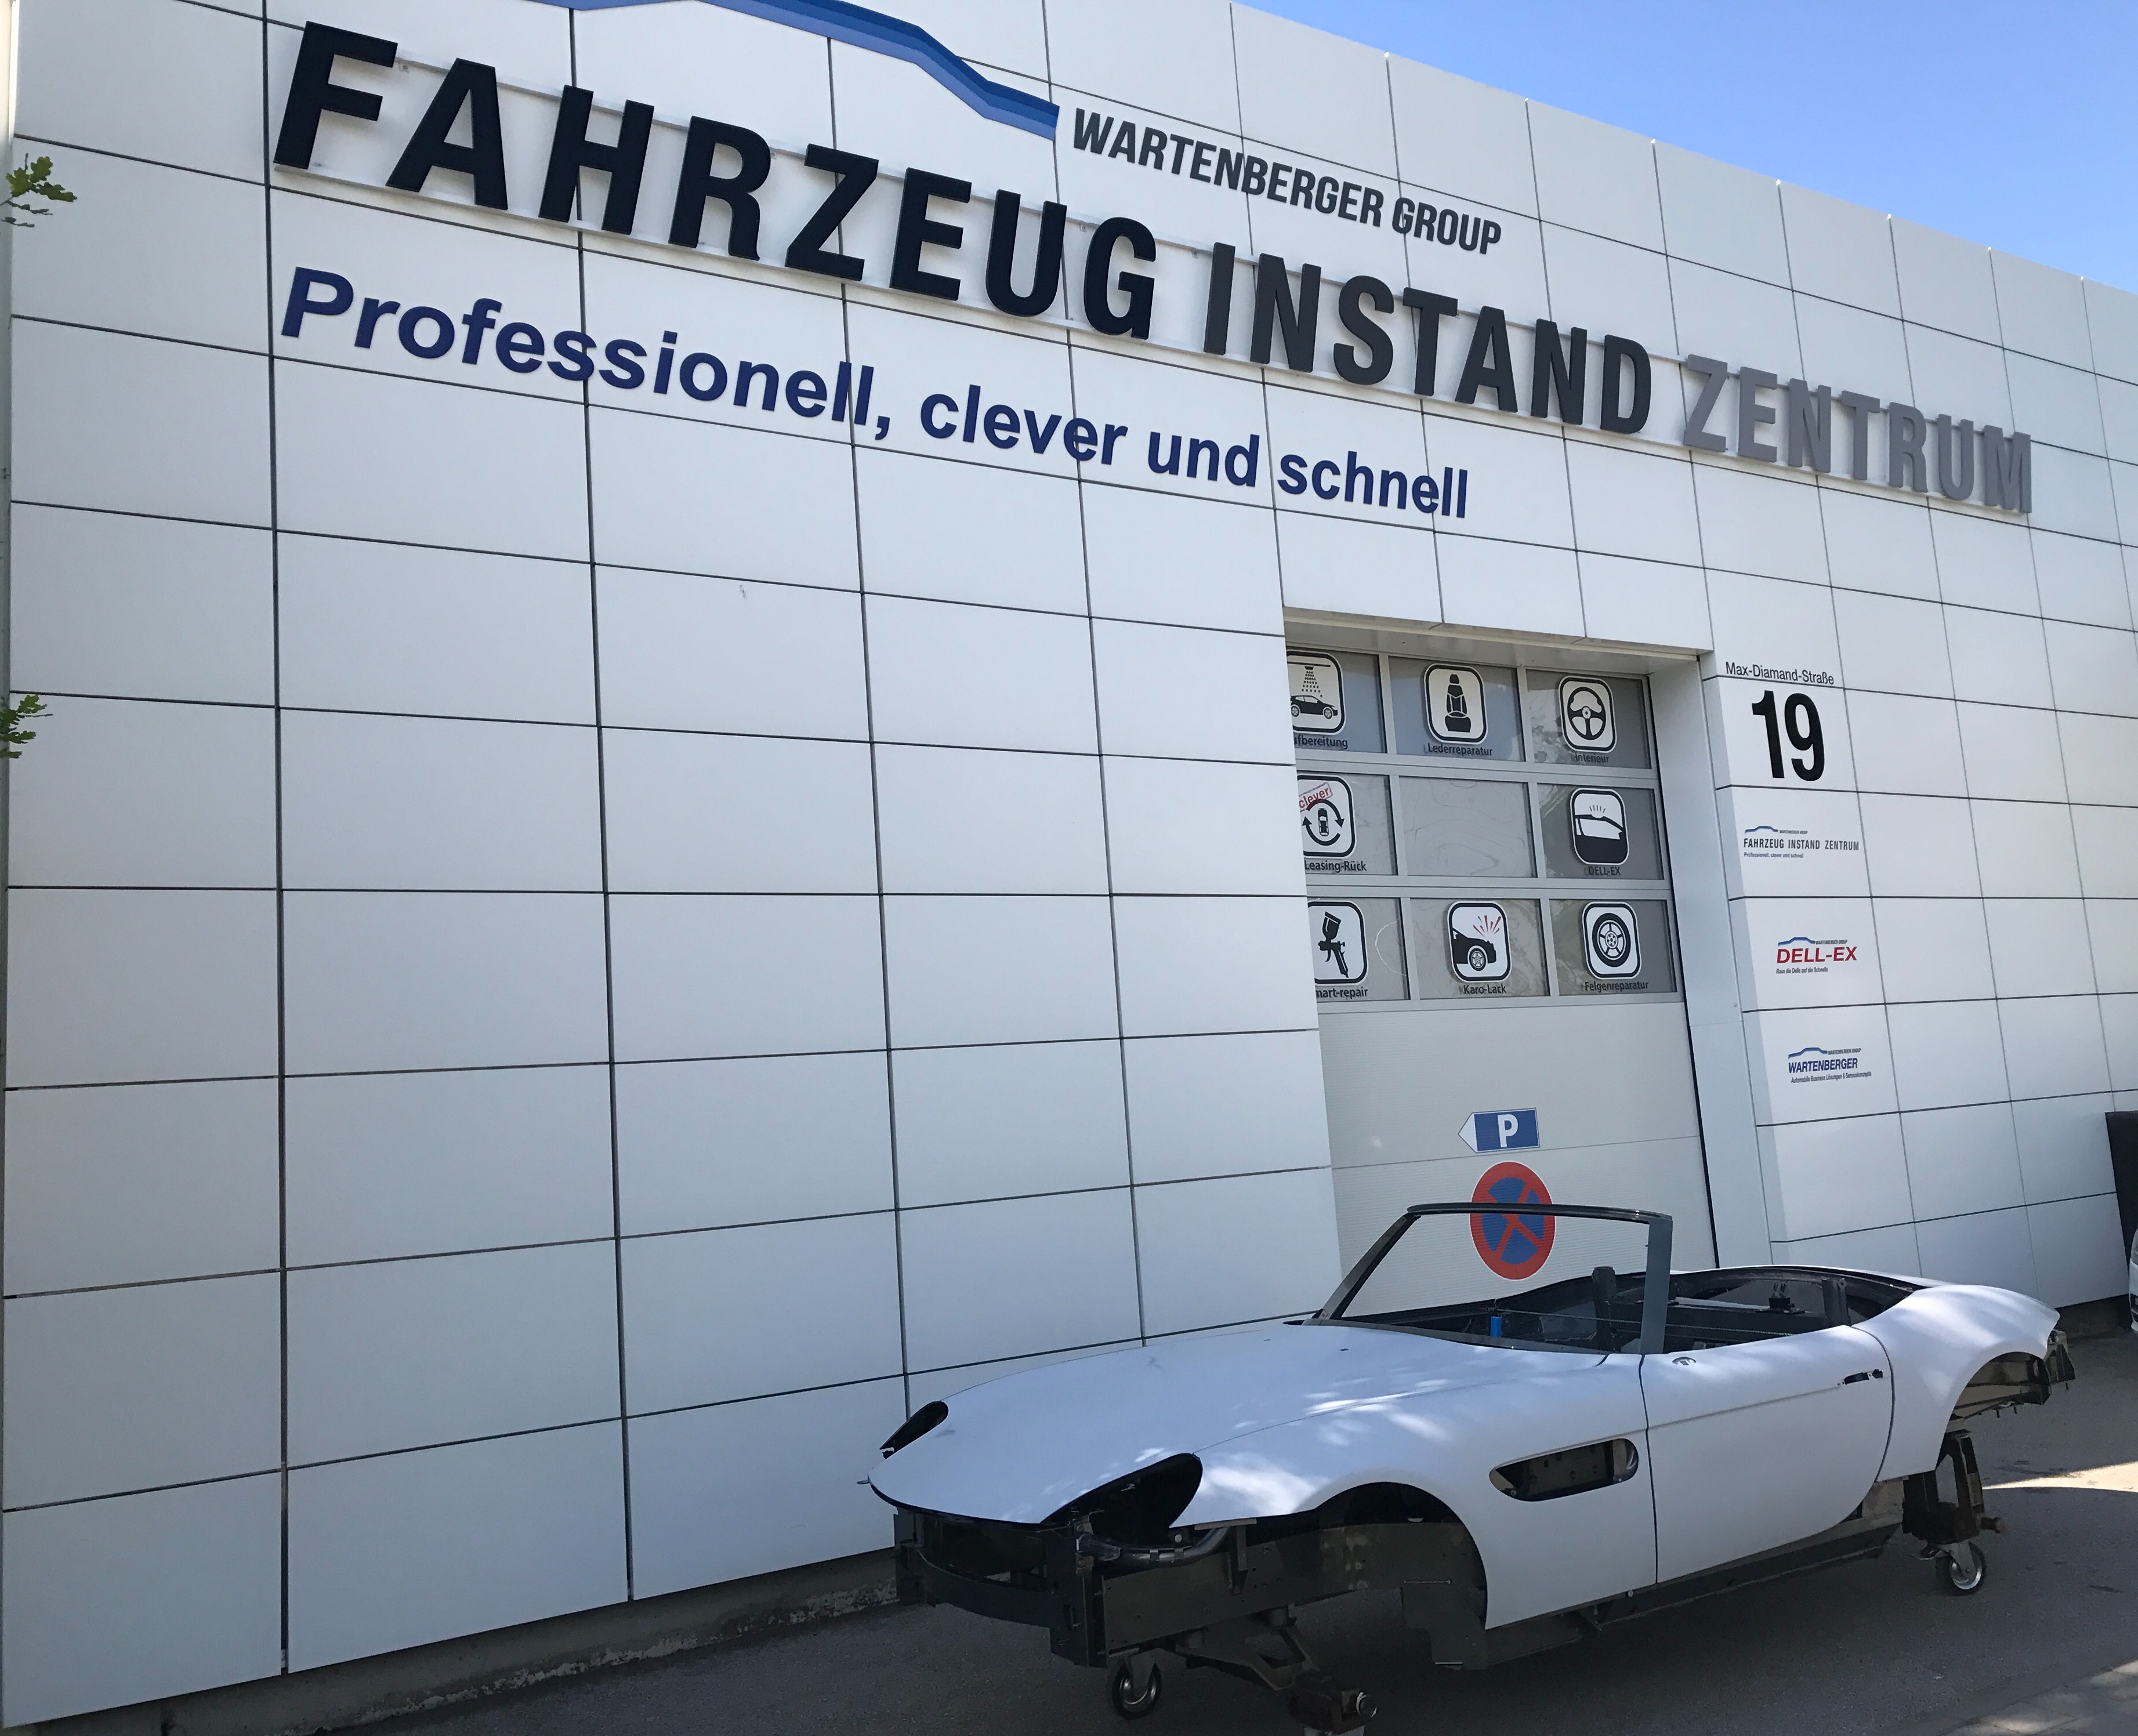 Fahrzeug Instandsetzungszentrum 
FIZ Muenchen Z8 Aufbau